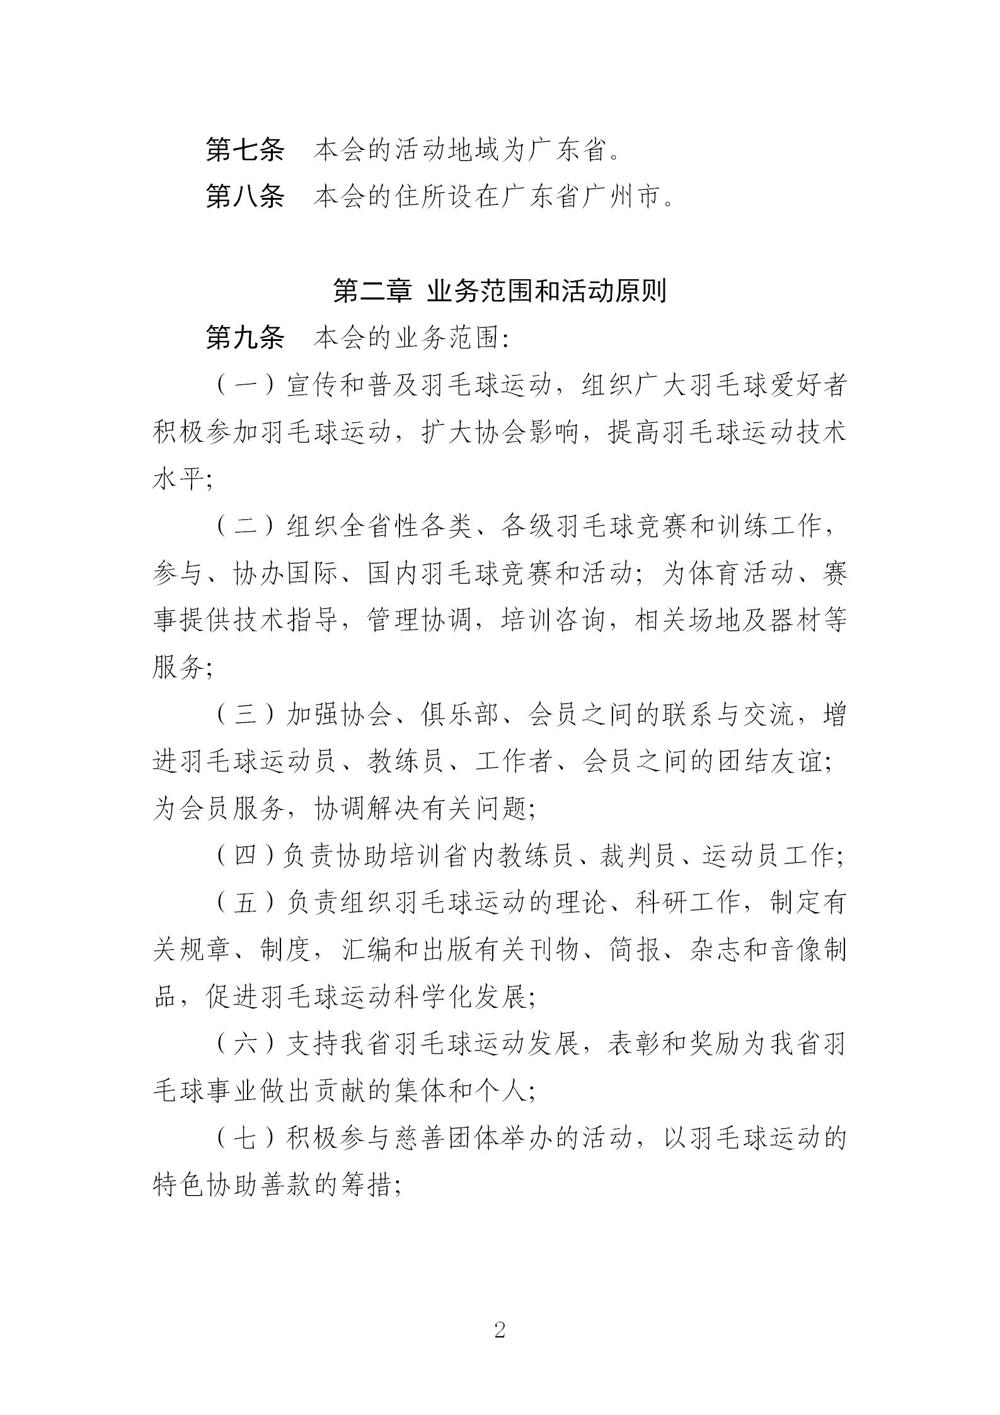 3-广东省羽毛球协会新章程20221107-根据民政厅修改意见修改_02